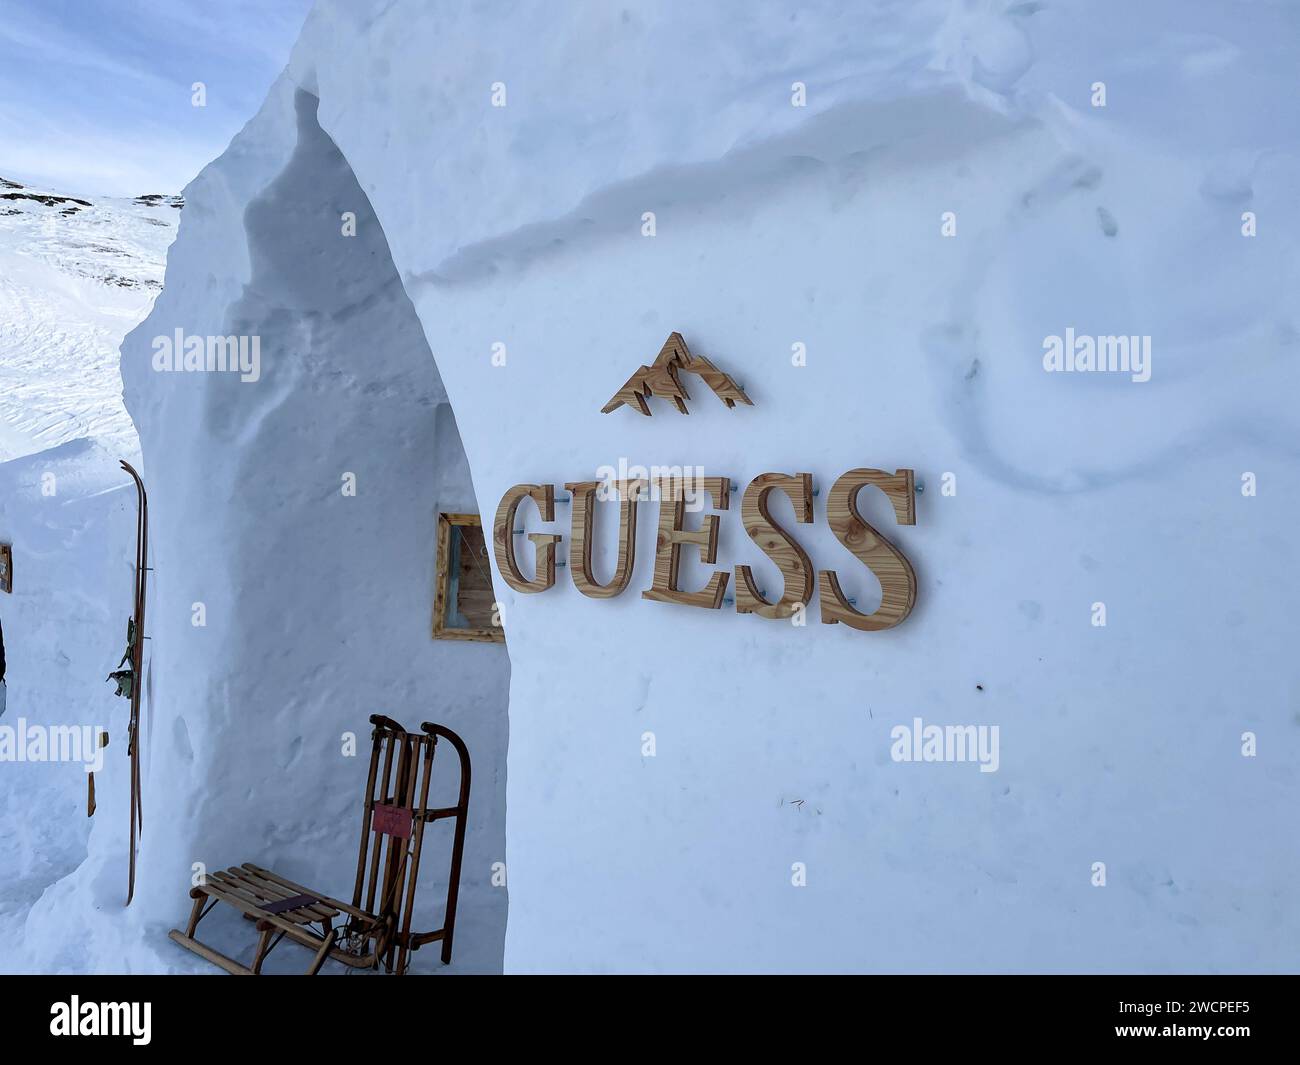 Schnee- und Eis-Iglu auf den Pisten des Skigebietes Zermatt, gesponsert von Guess. Stockfoto